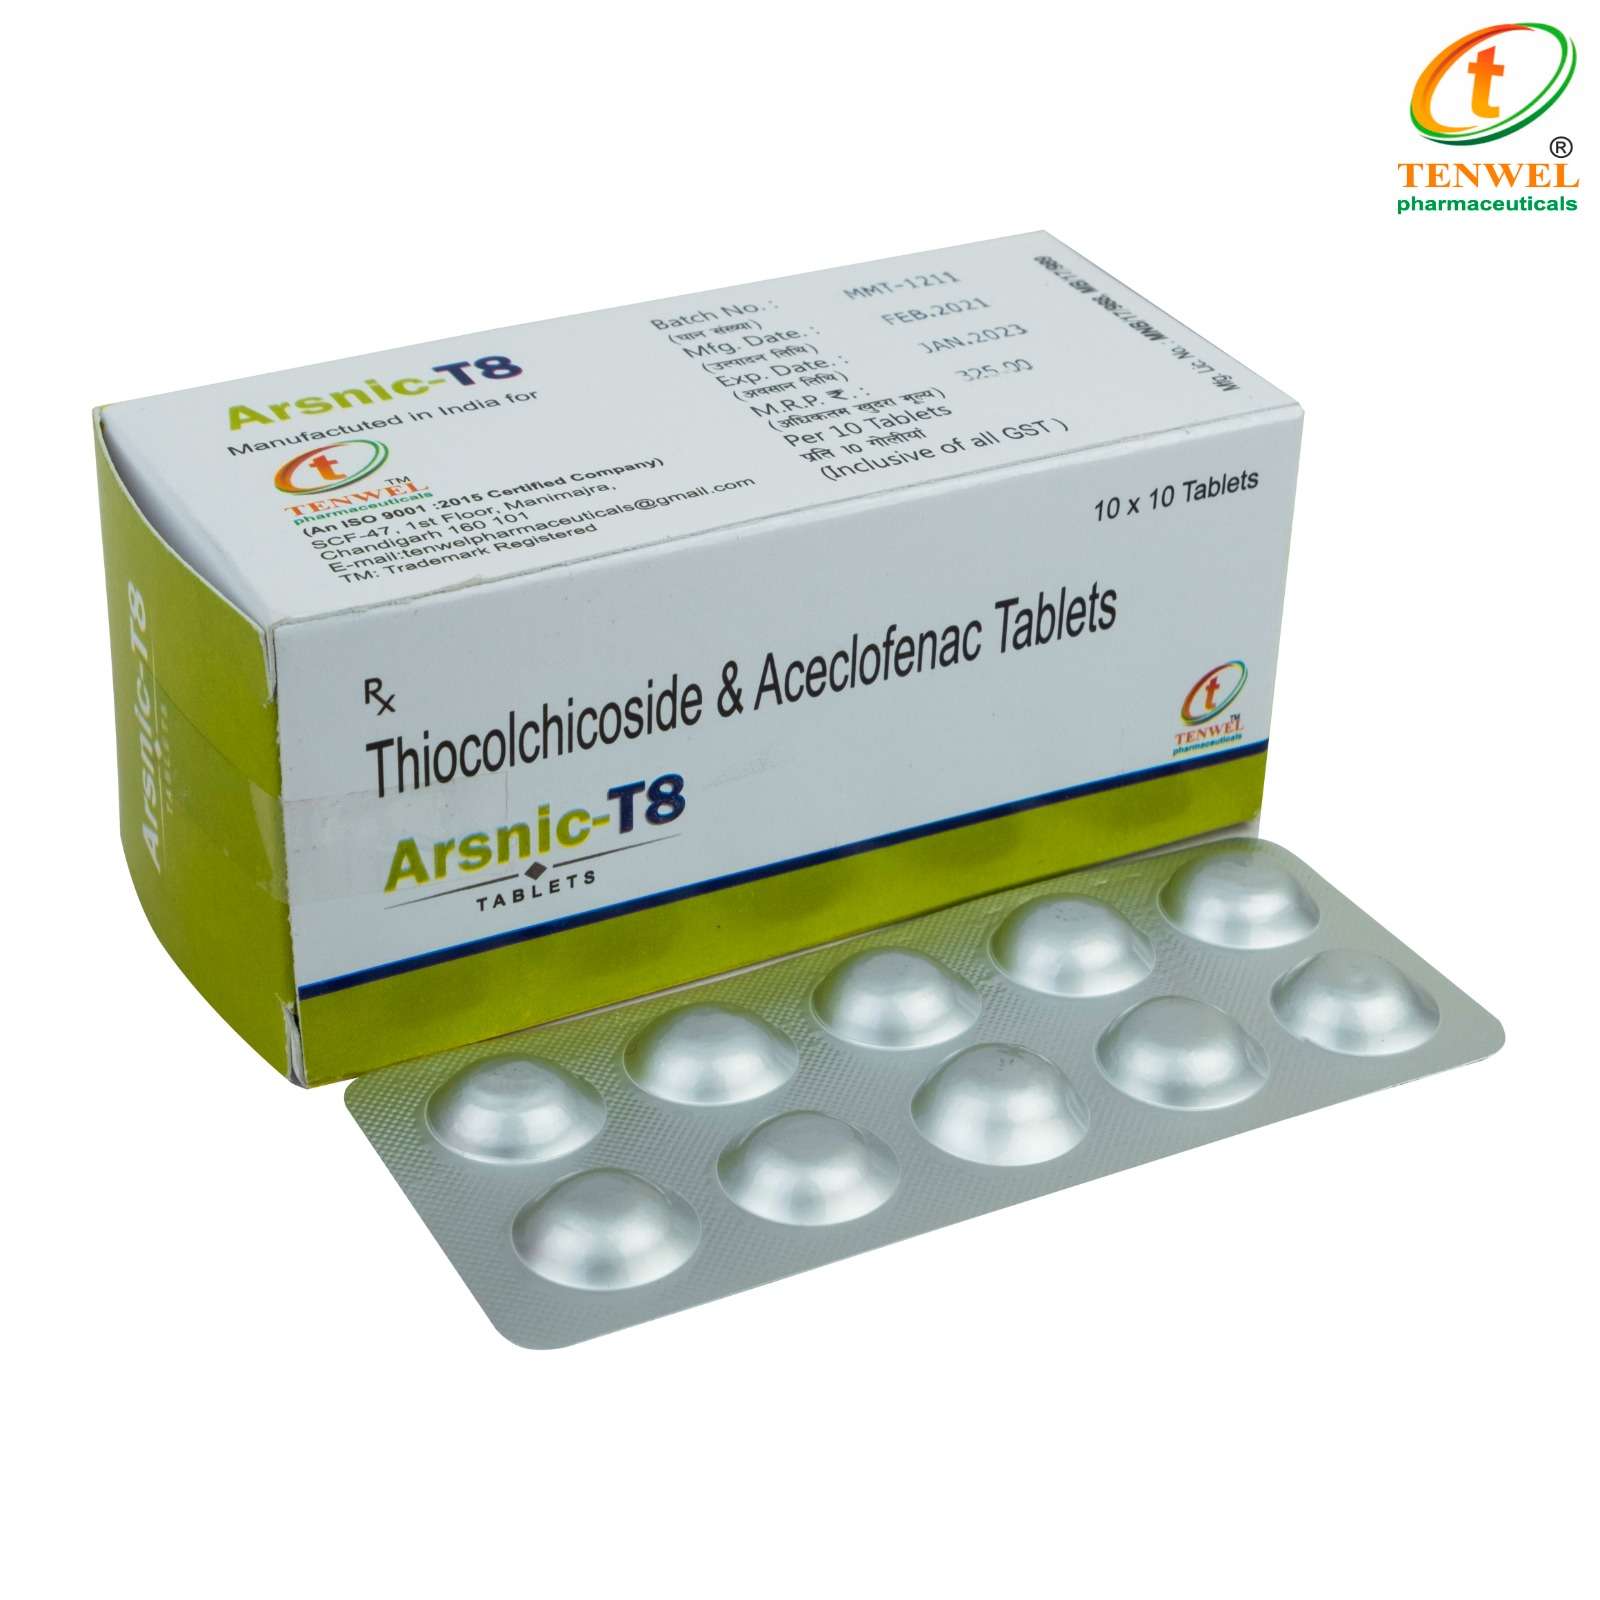 aceclofenac 100mg + thiocolchicoside 8mg tab